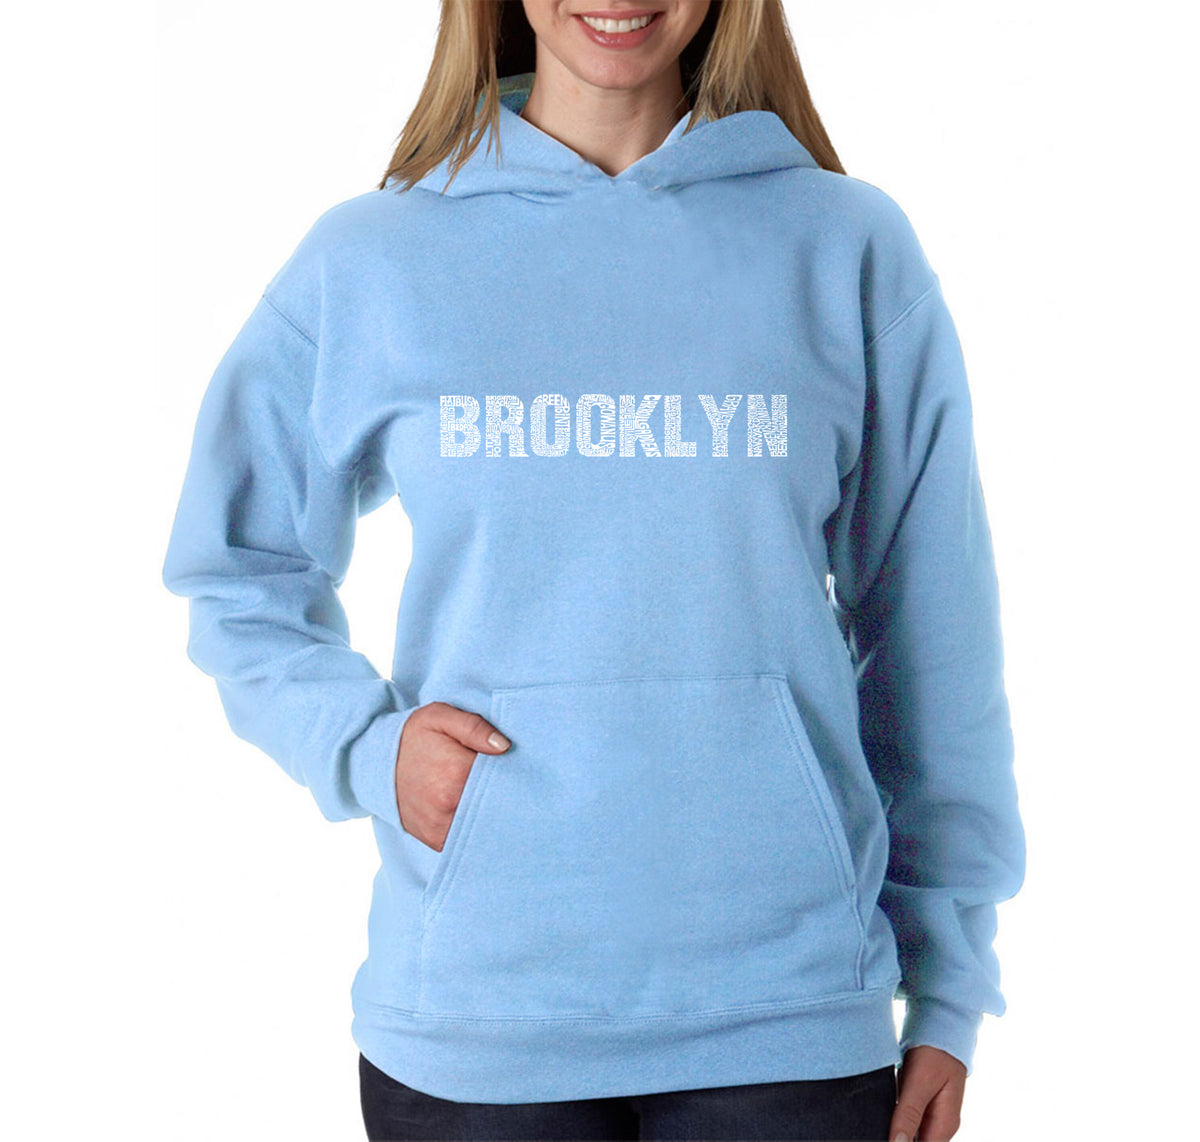 BROOKLYN NEIGHBORHOODS - Women's Word Art Hooded Sweatshirt – LA Pop Art